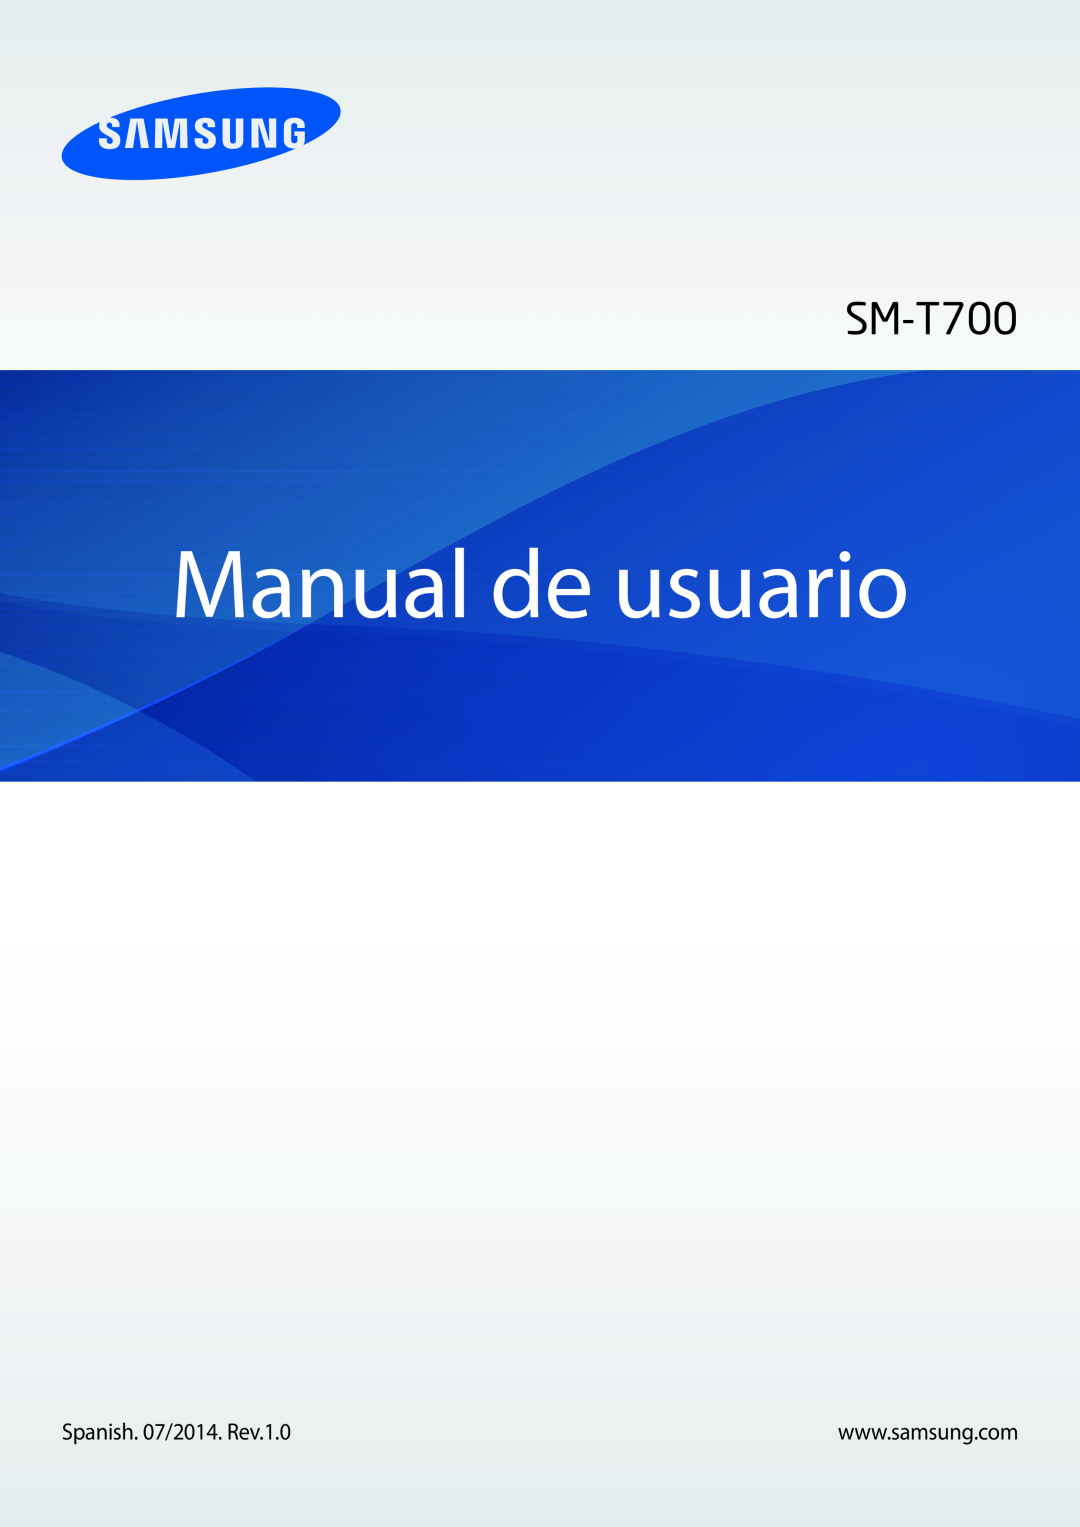 Samsung SM-T700NZWADBT, SM-T700NZWAXEO, SM-T700NZWATPH, SM-T700NTSATPH, SM-T700NTSAPHE manual Manual de usuario 